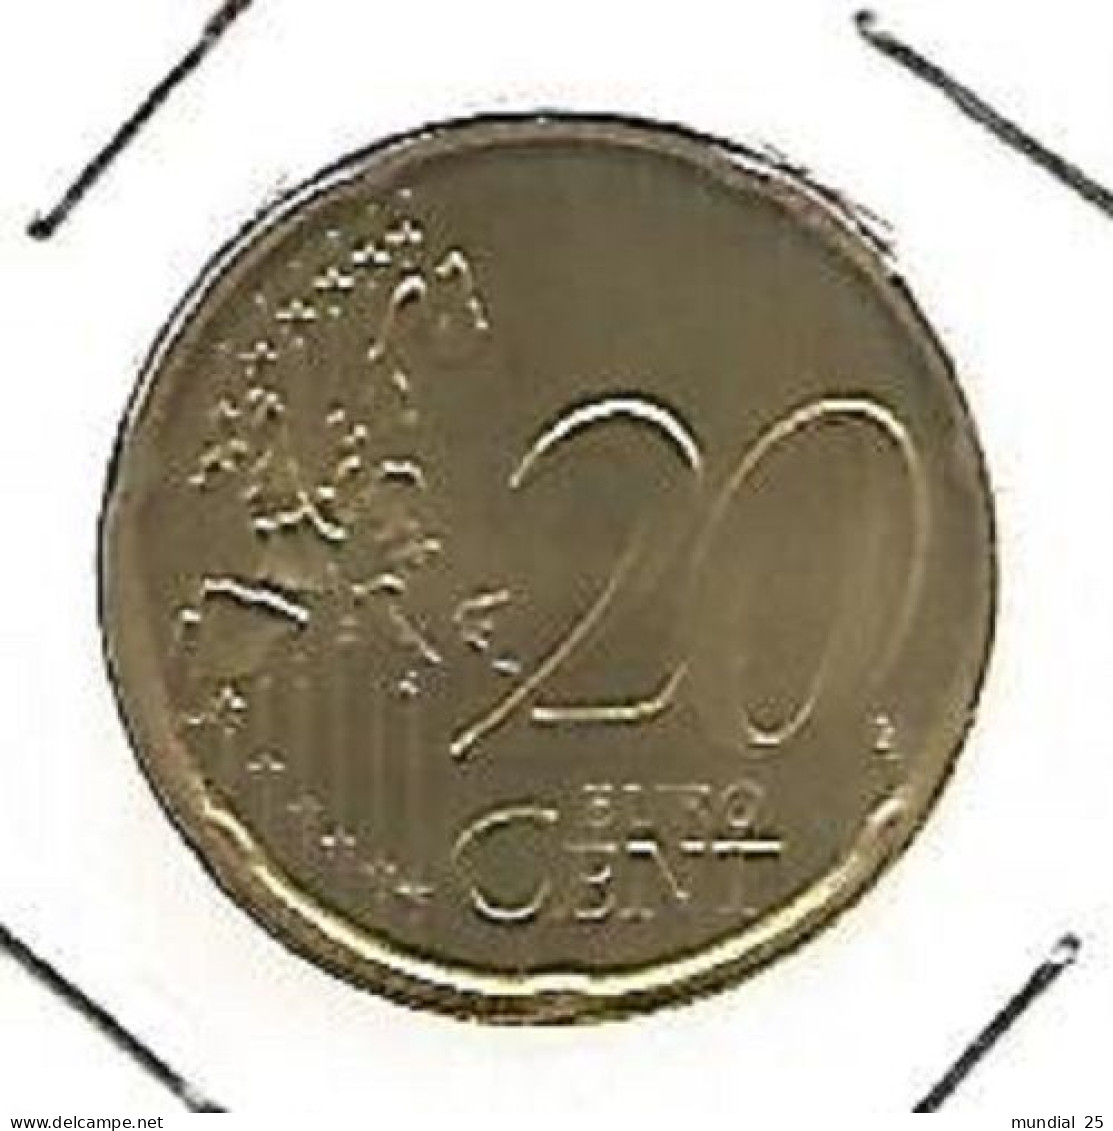 SPAIN 20 EURO CENT 1999 M - Spanien